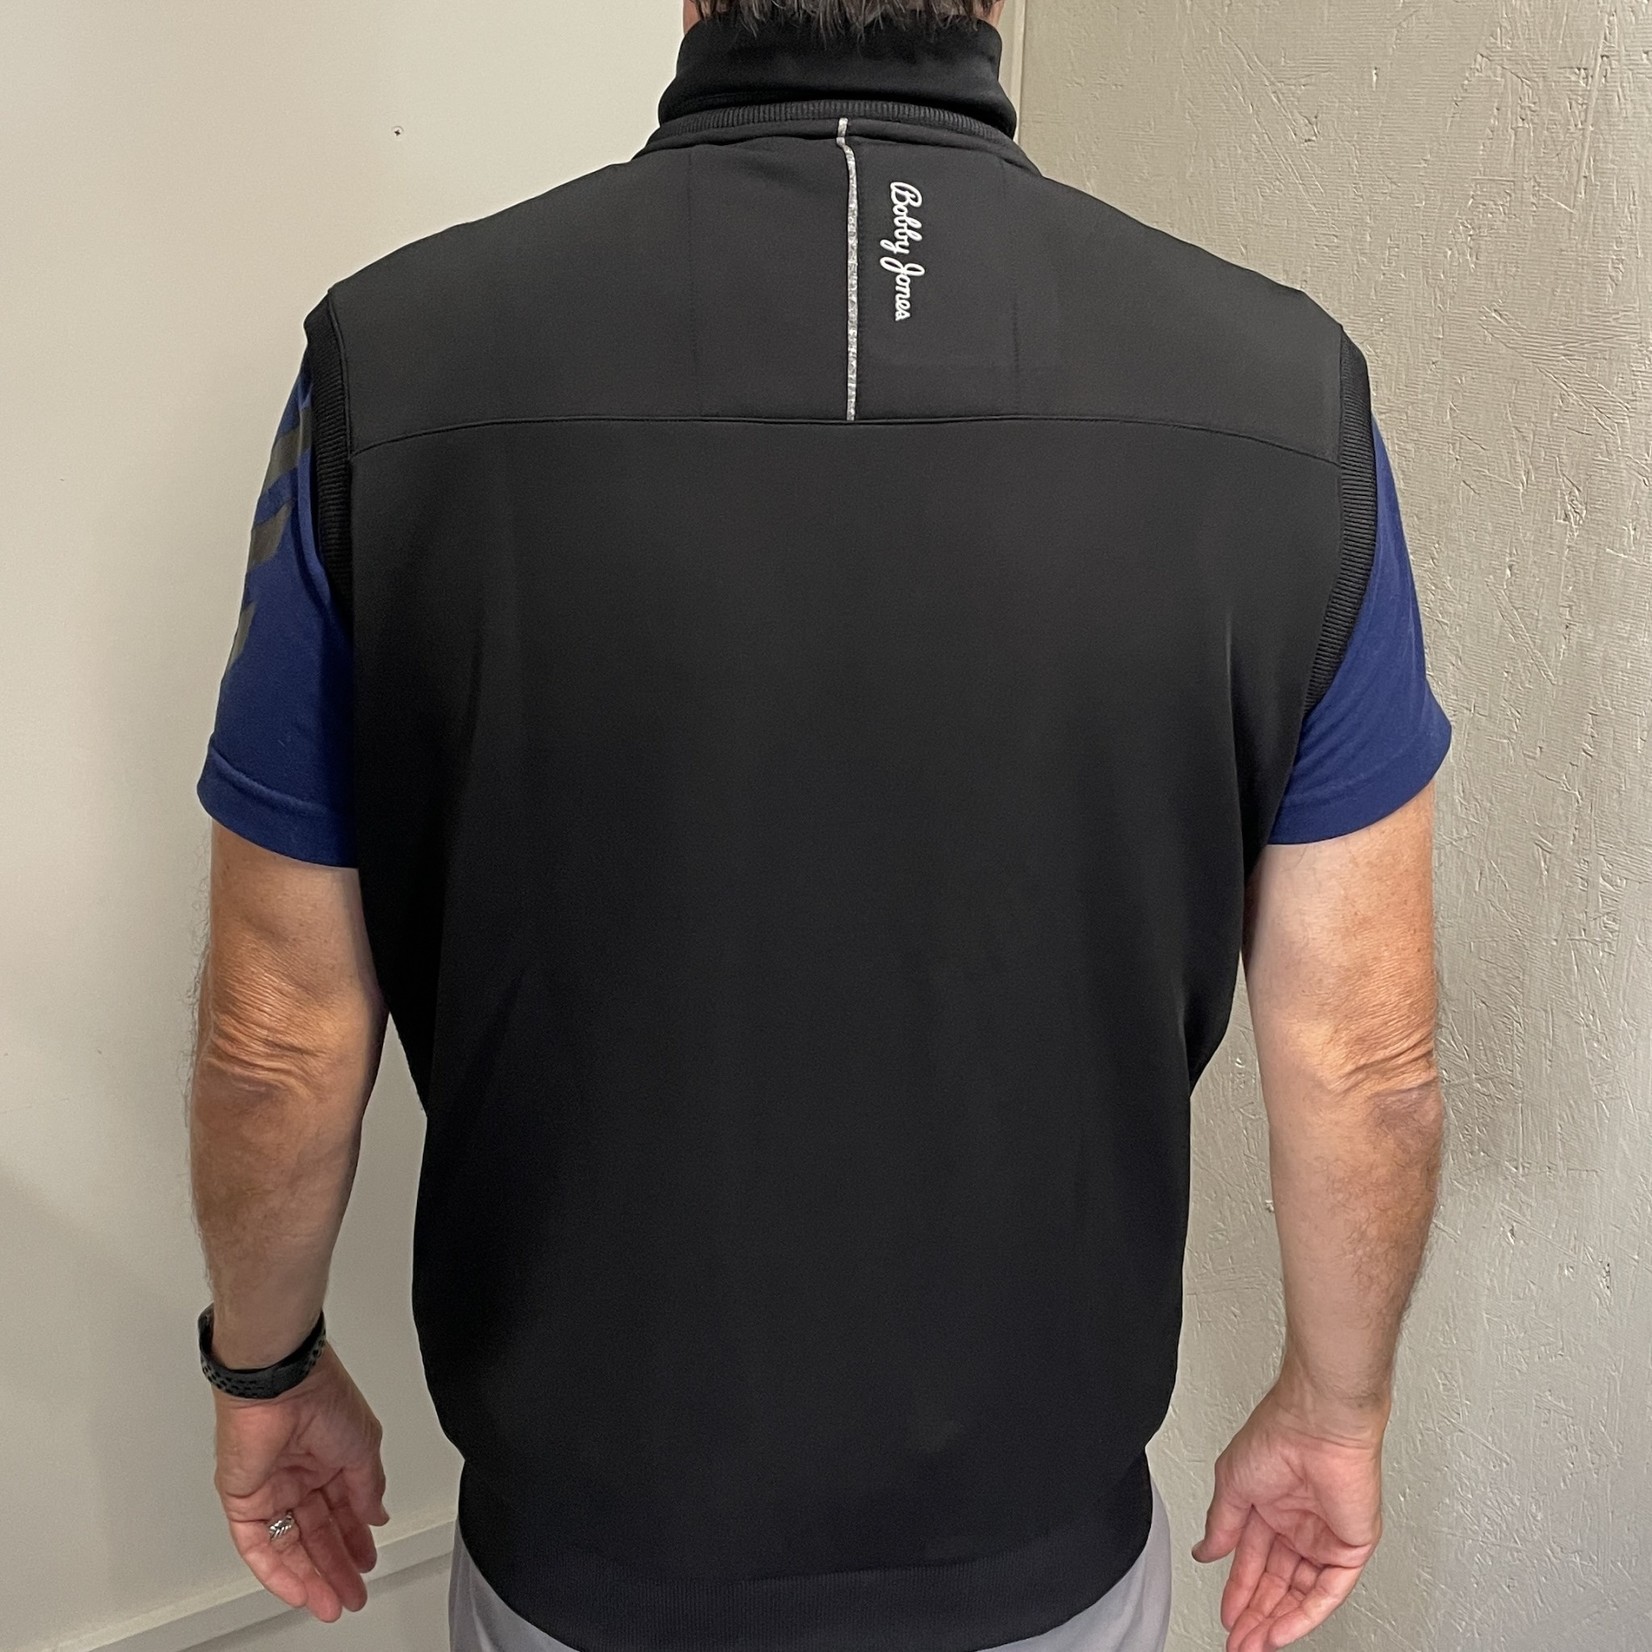 Bobby Jones Bobby Jones Men's Heavy Duty Embroidered  Vest - Full zipper XH2O Performance Series